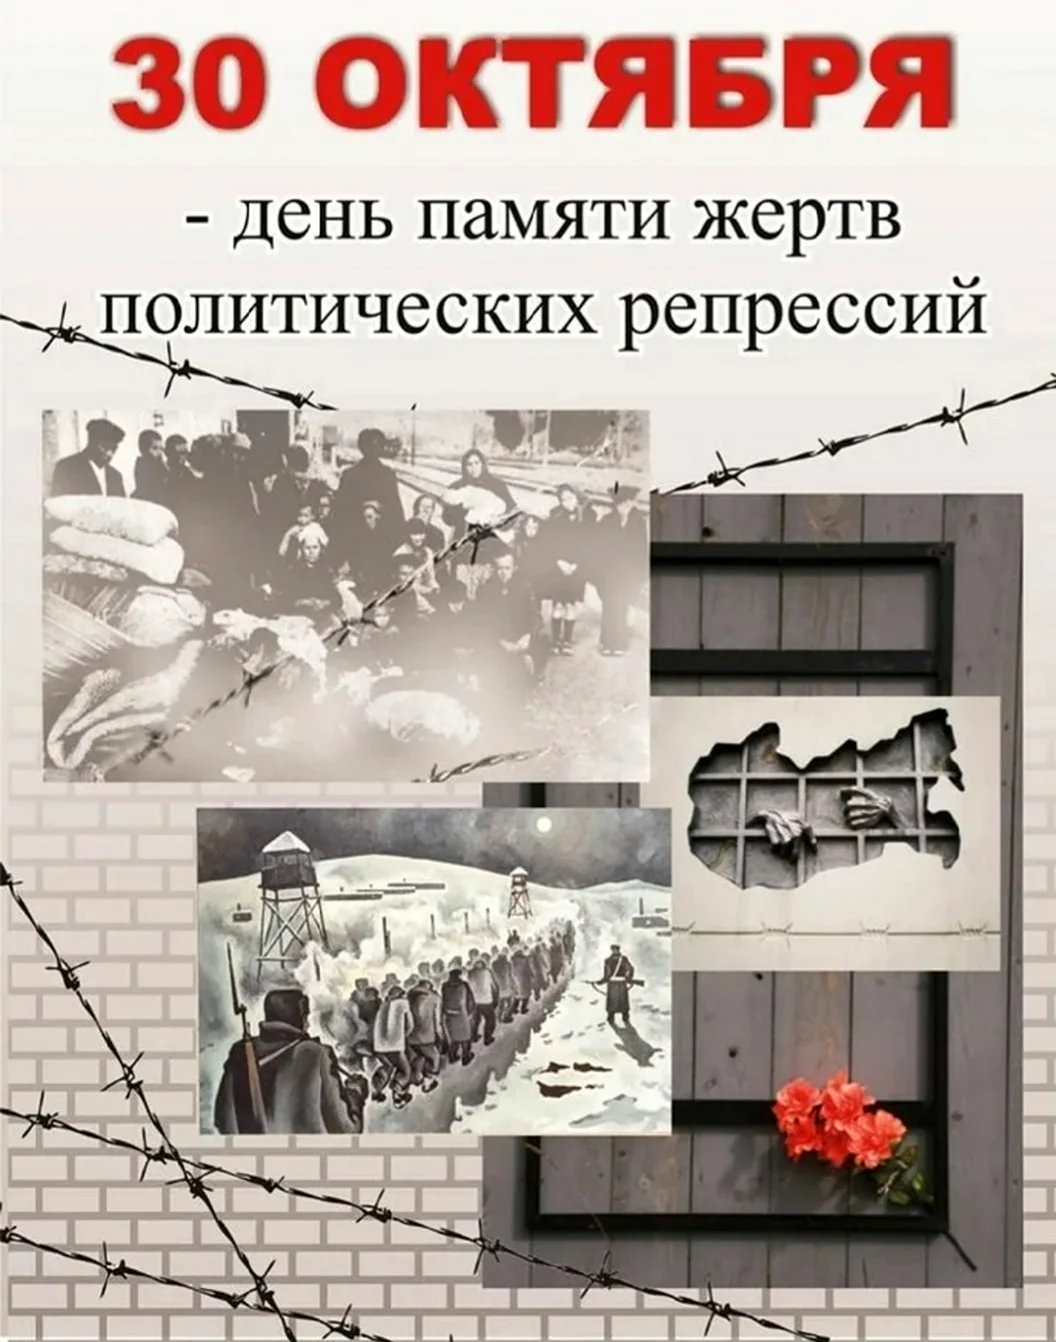 30 Октября день памяти политических репрессий в России. Поздравление